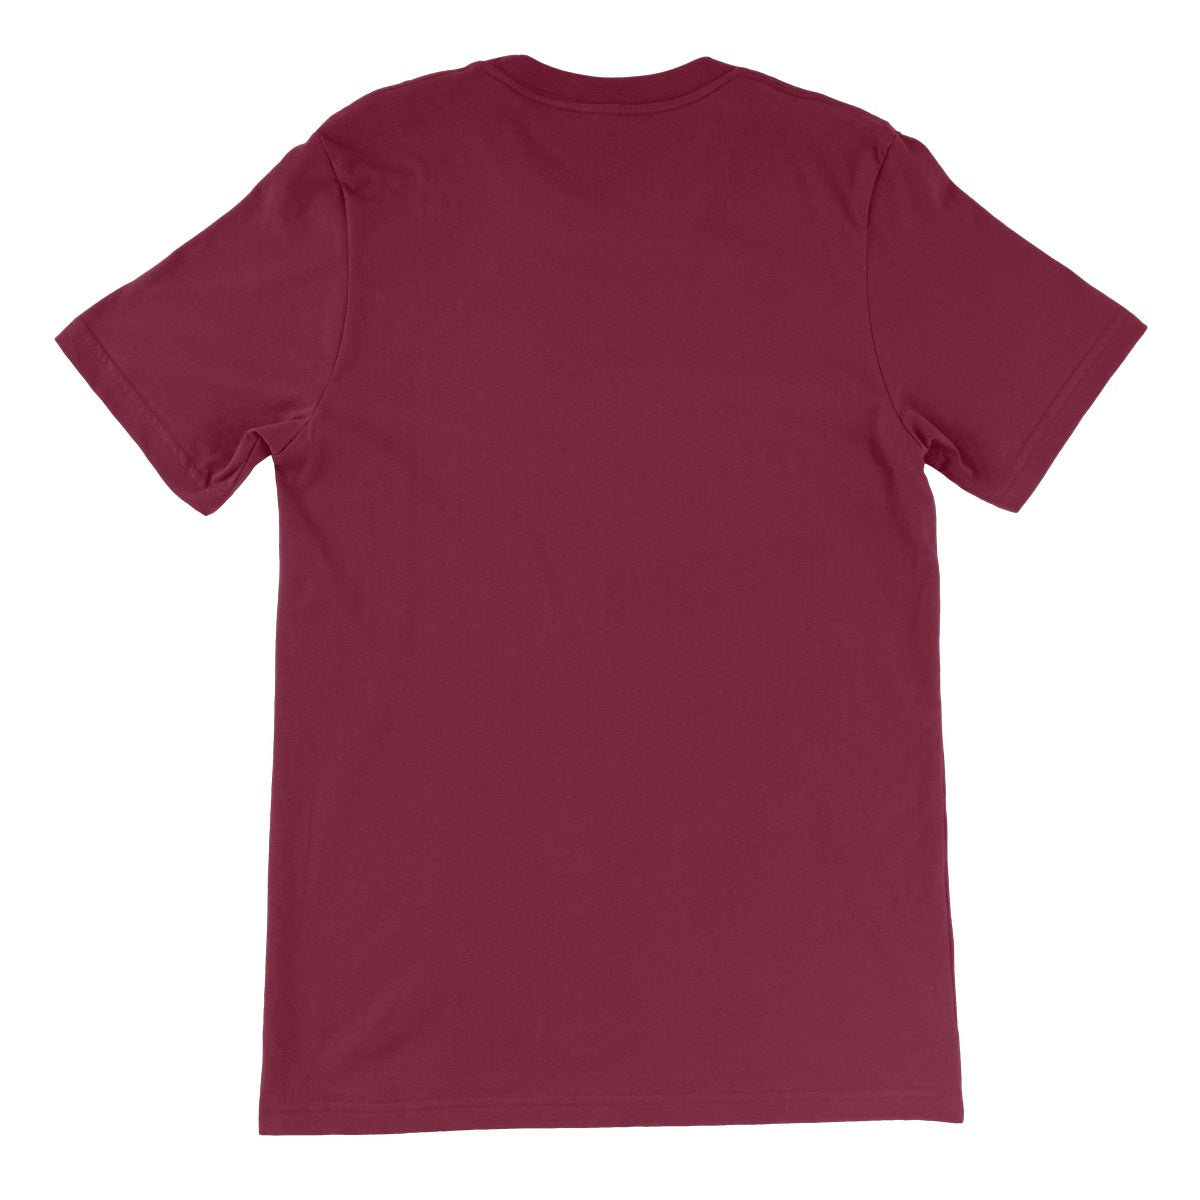 BOB DYLAN - POP ART Unisex Short Sleeve T-Shirt